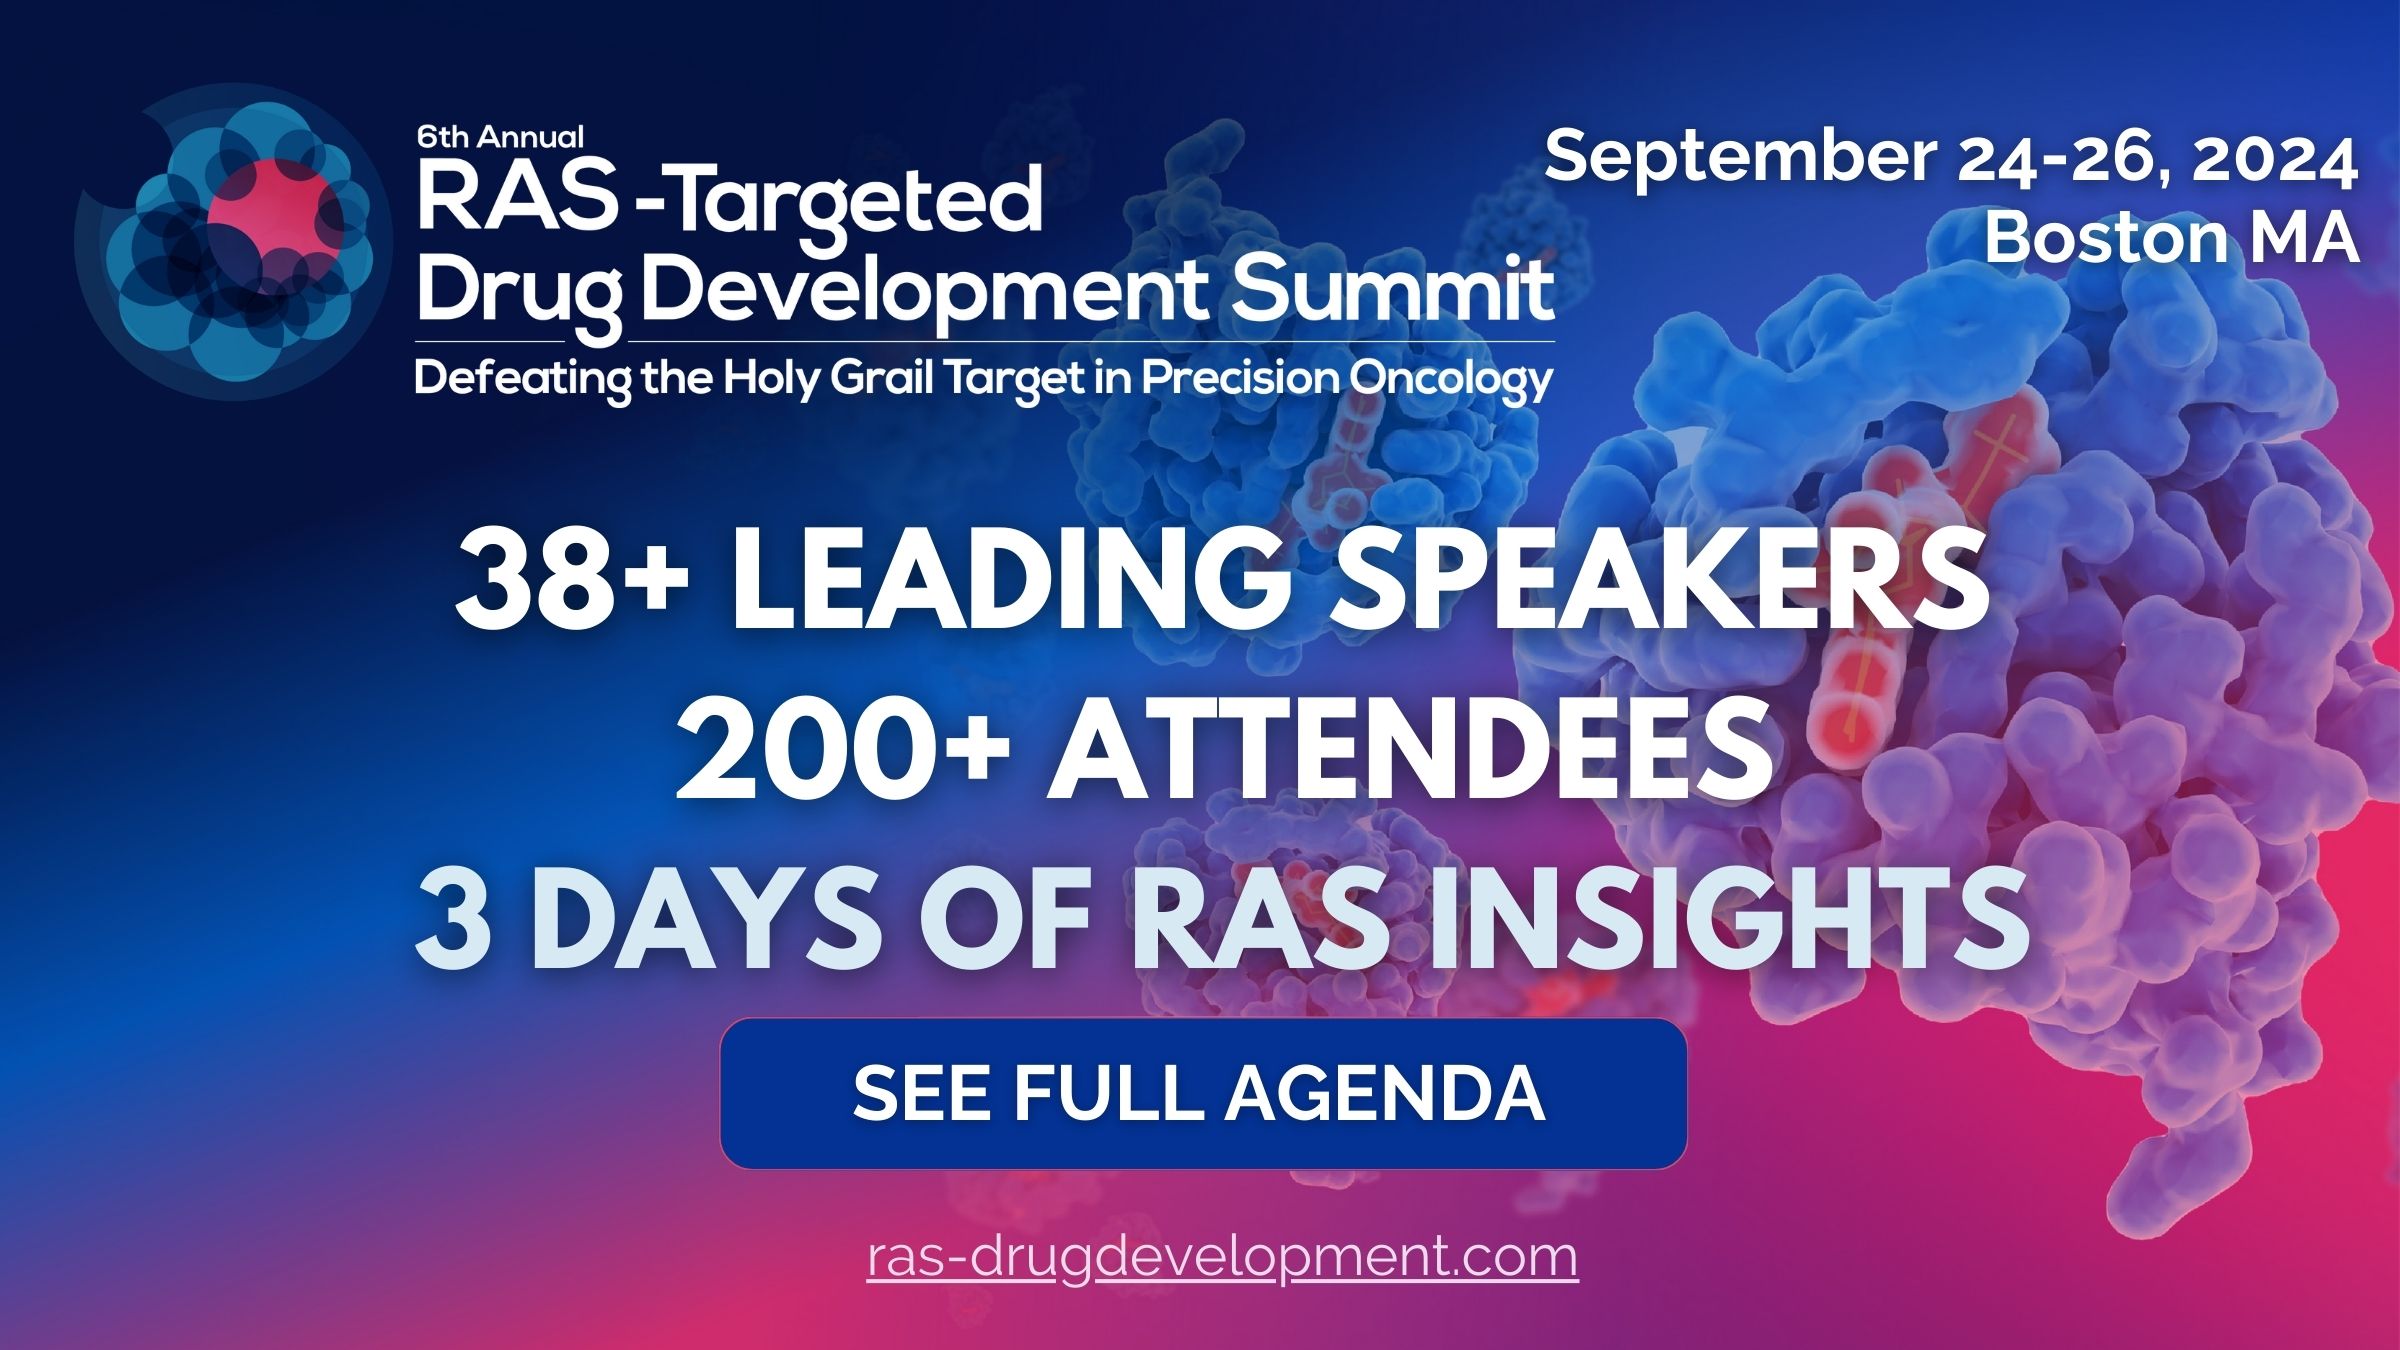 RAS-targeted drug development summit banner